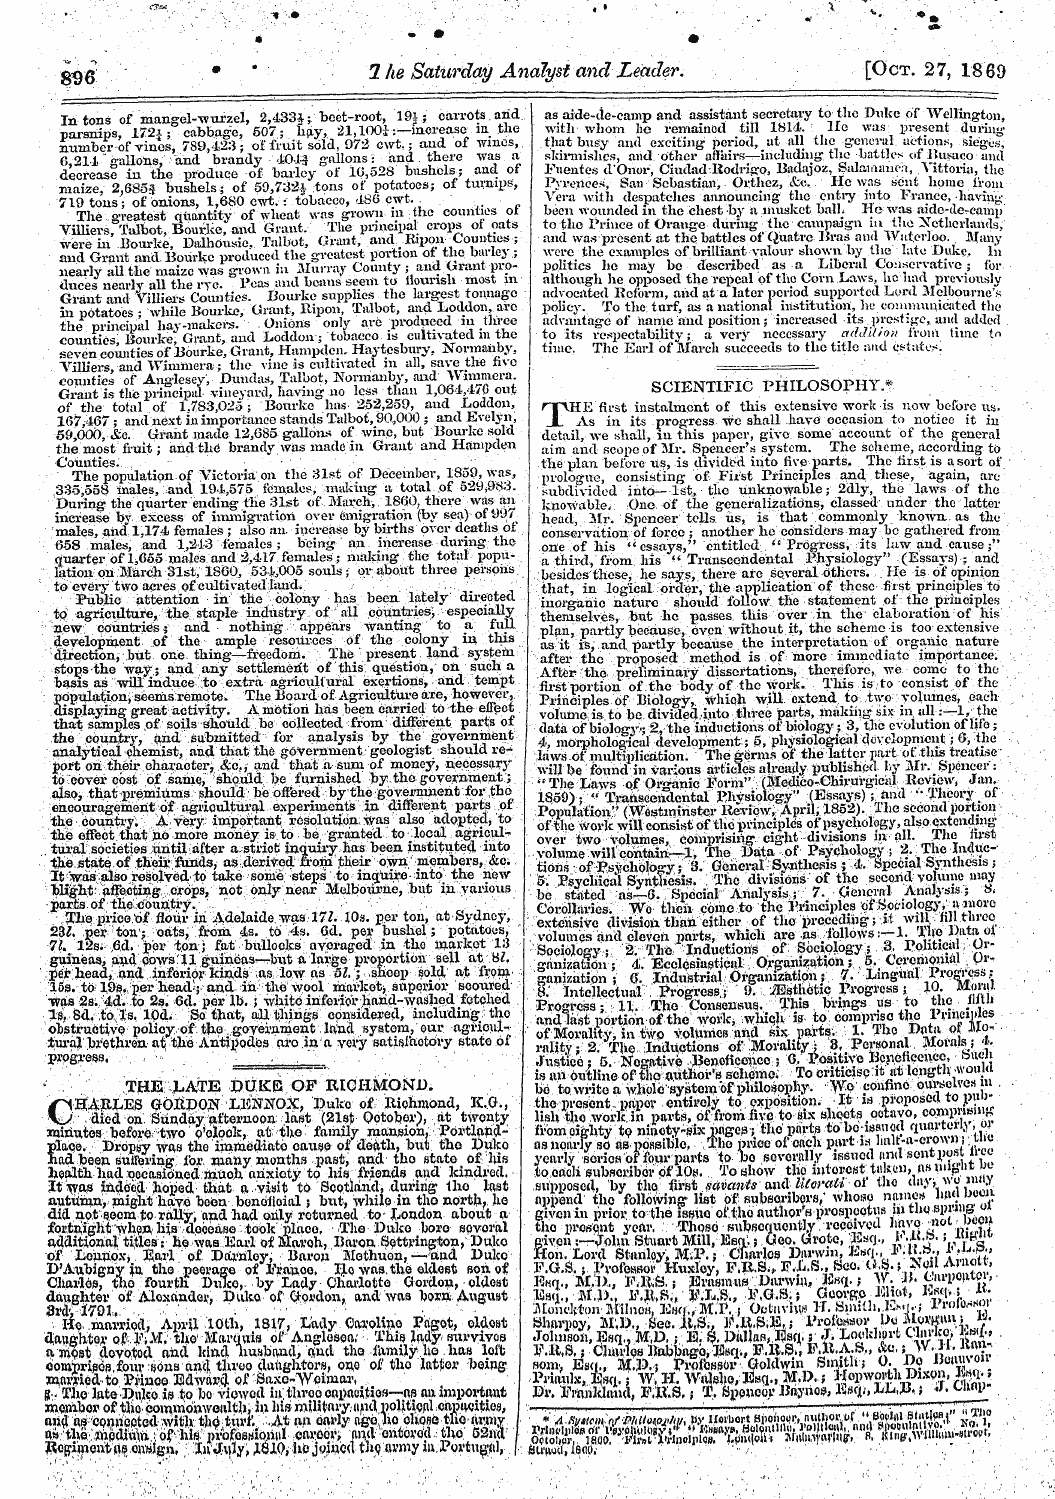 Leader (1850-1860): jS F Y, 2nd edition - In Tons Of Mangel-Wurzel, 2,433i; Beet-R...